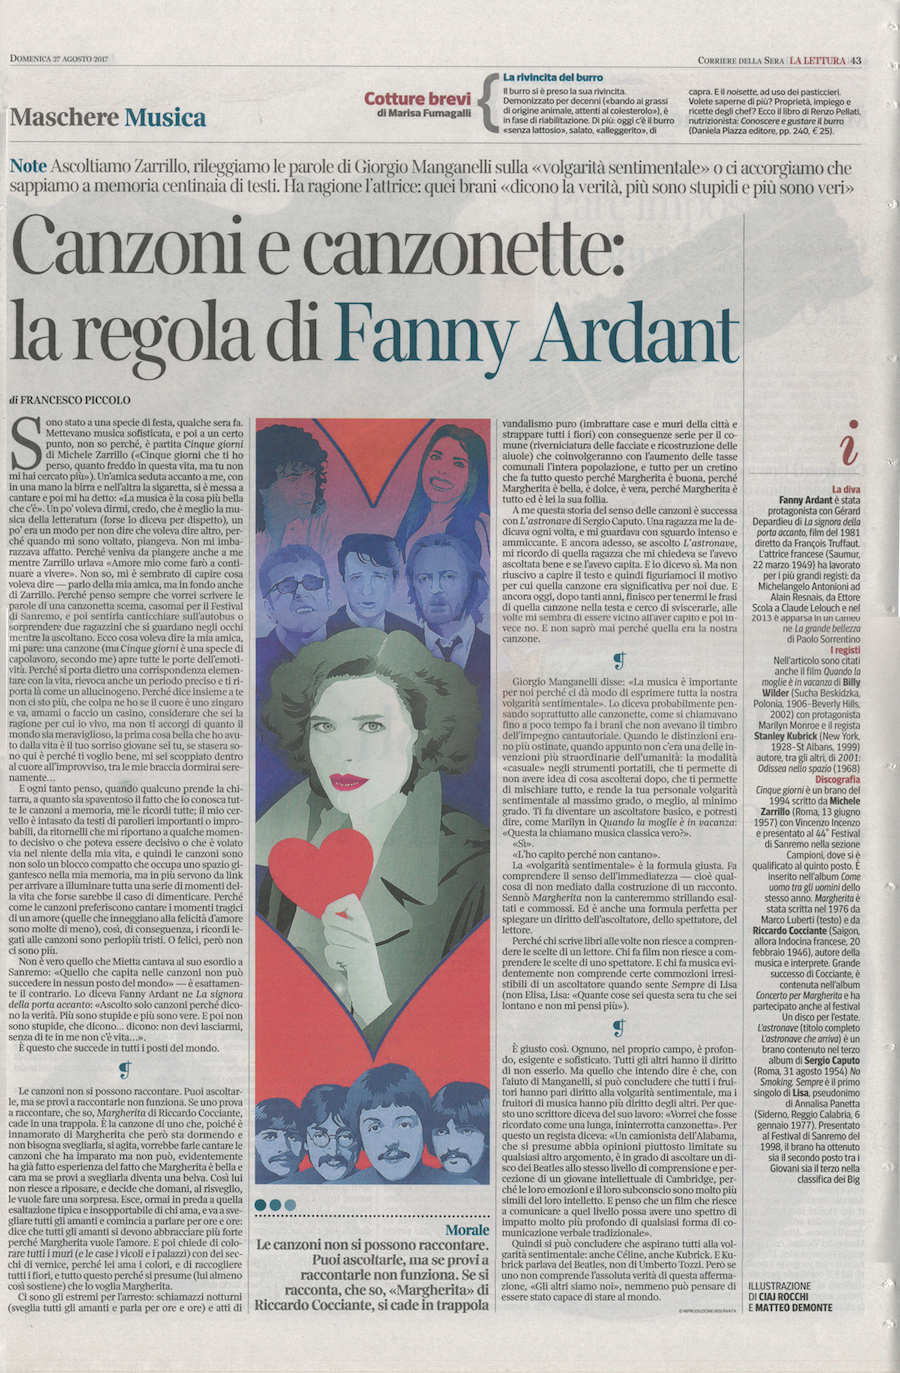 Francesco Piccolo, Canzoni e canzonette: la regola di Fanny Ardant